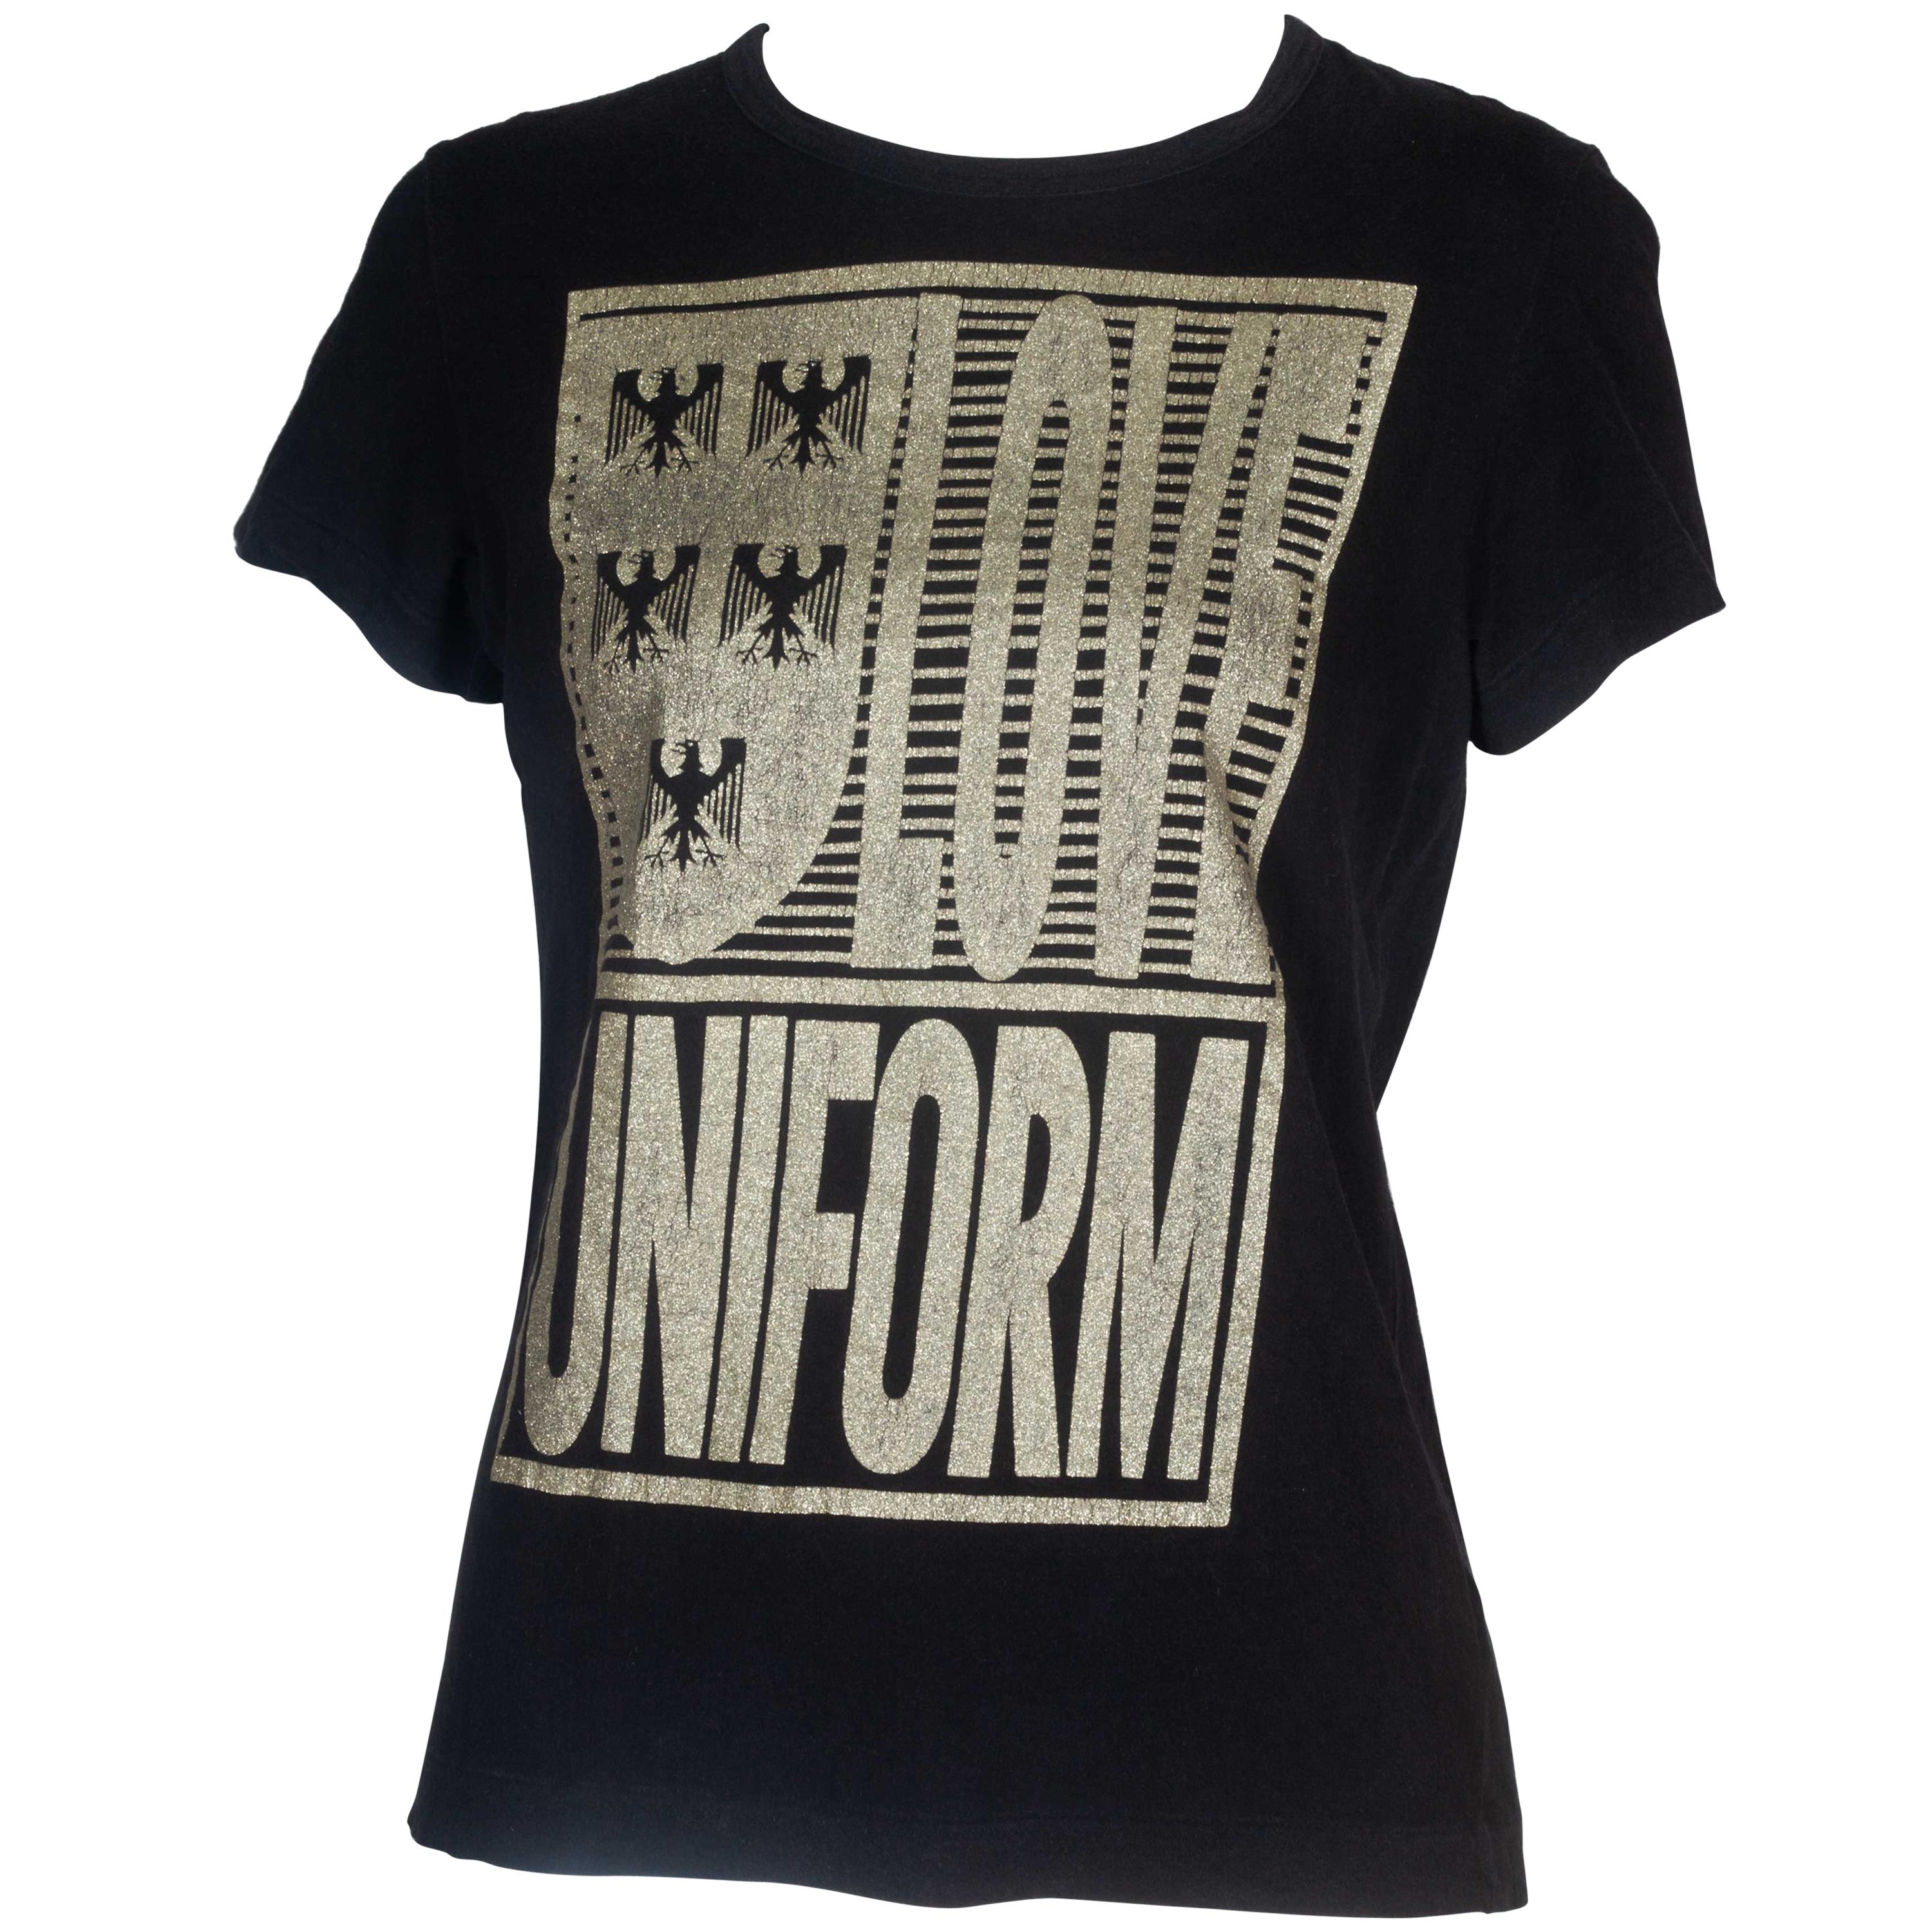 Comme des Garçons T-shirt with "Love Uniform" Print, 2008